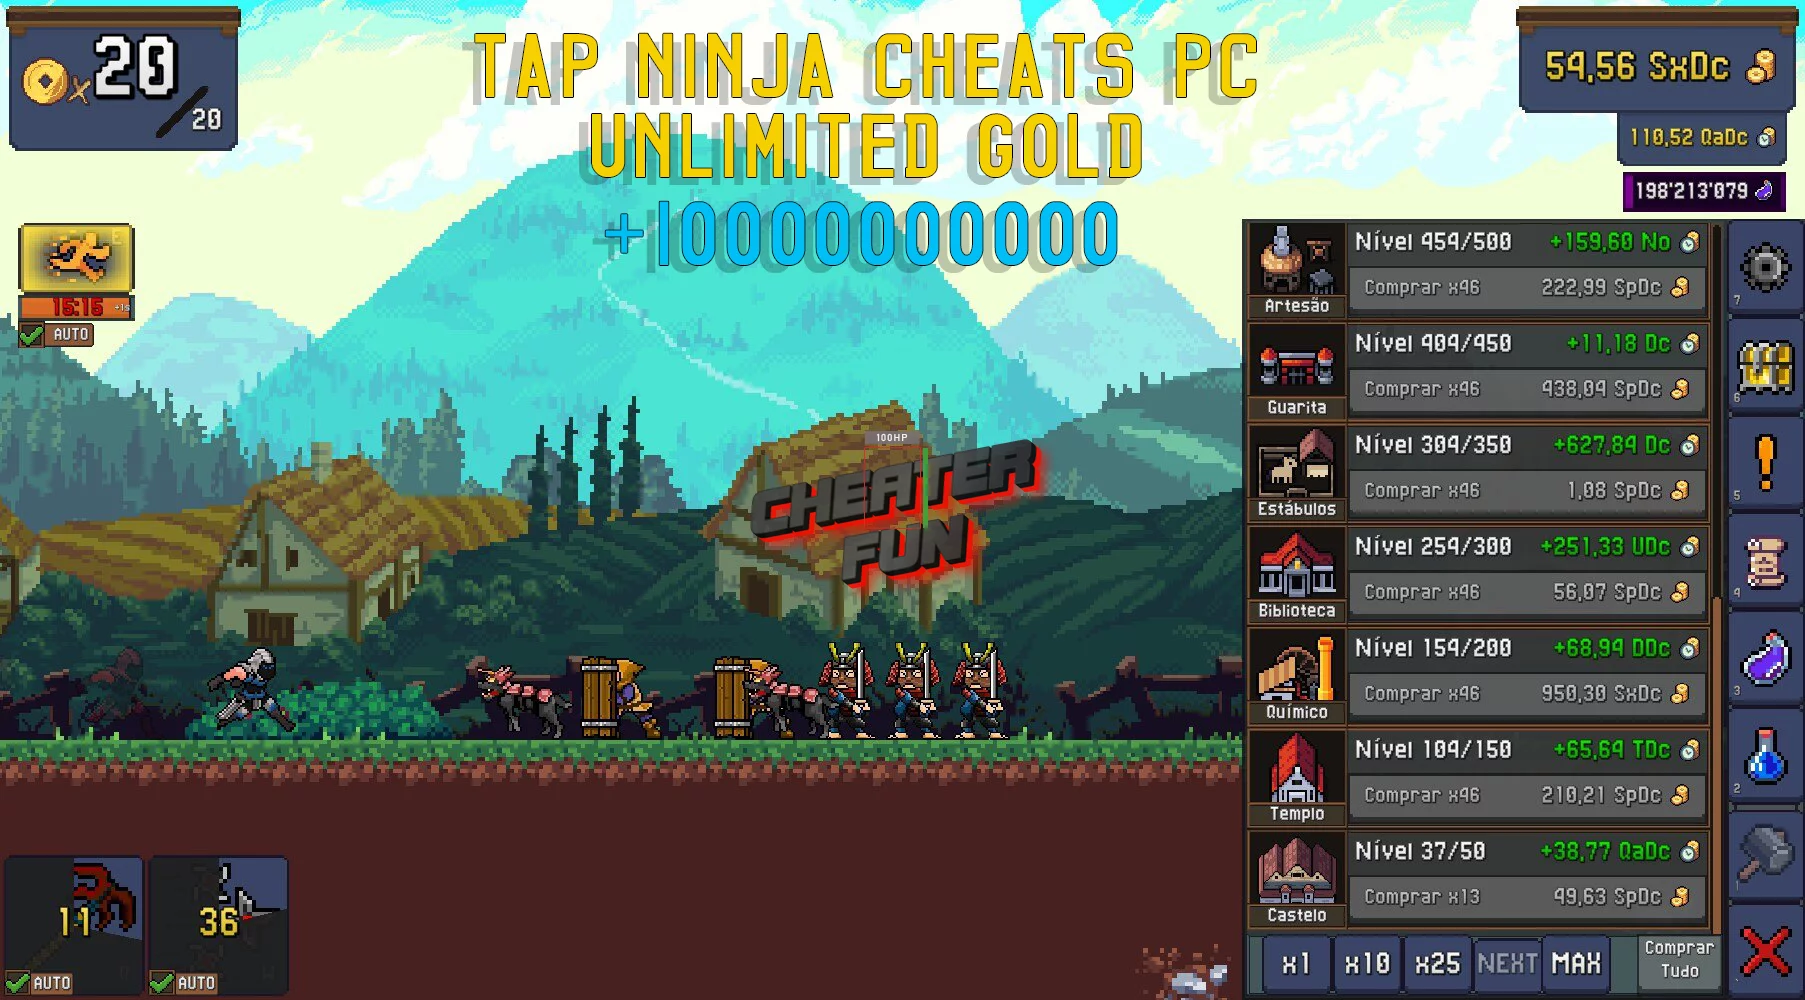 Tap Ninja Cheats PC: Unlimited Gold